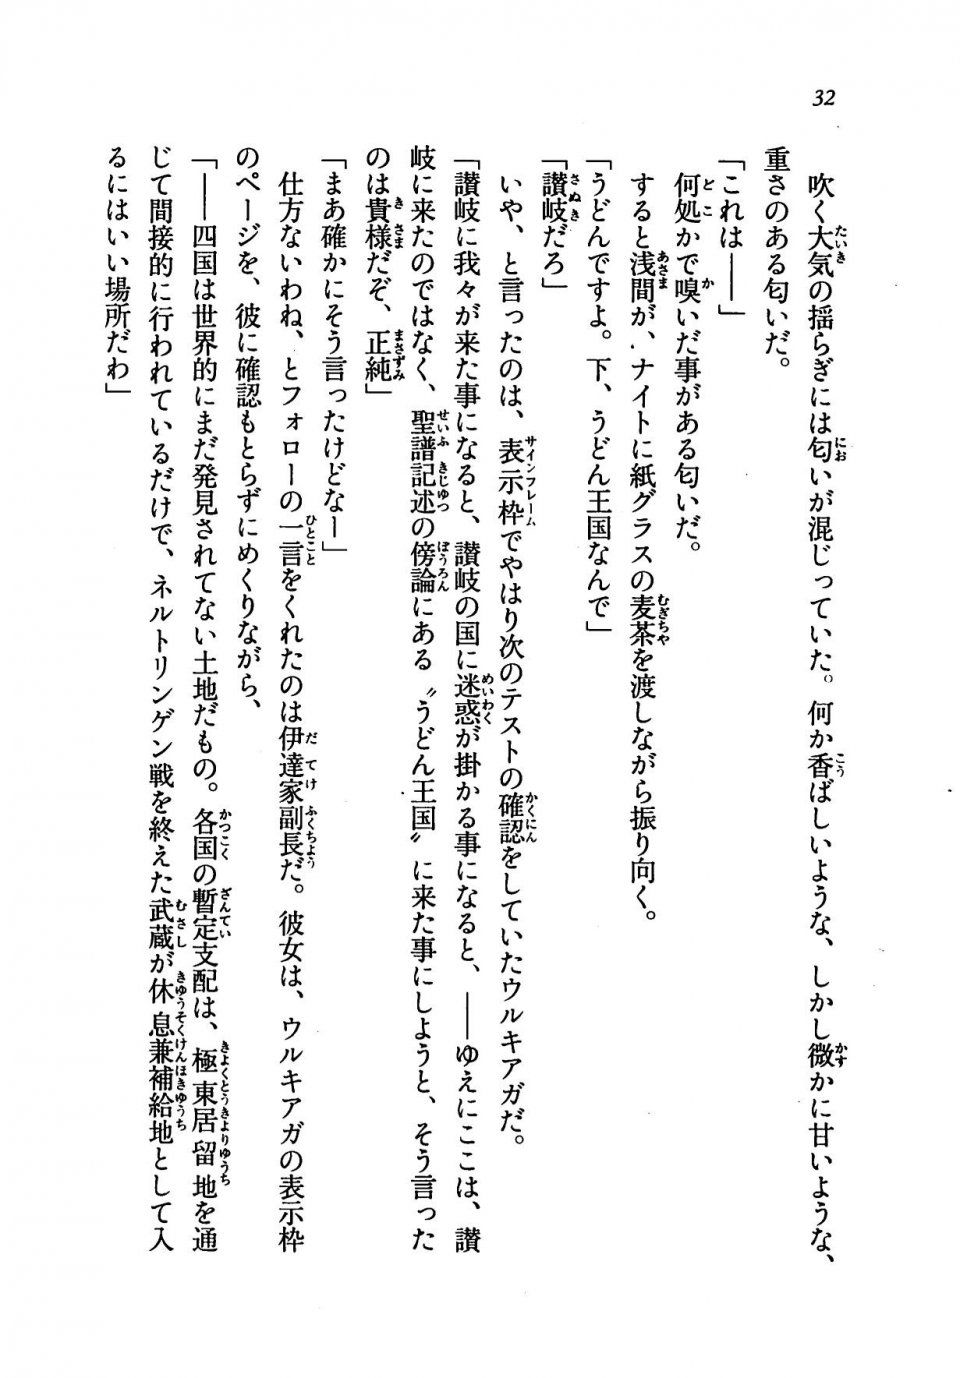 Kyoukai Senjou no Horizon LN Vol 19(8A) - Photo #32